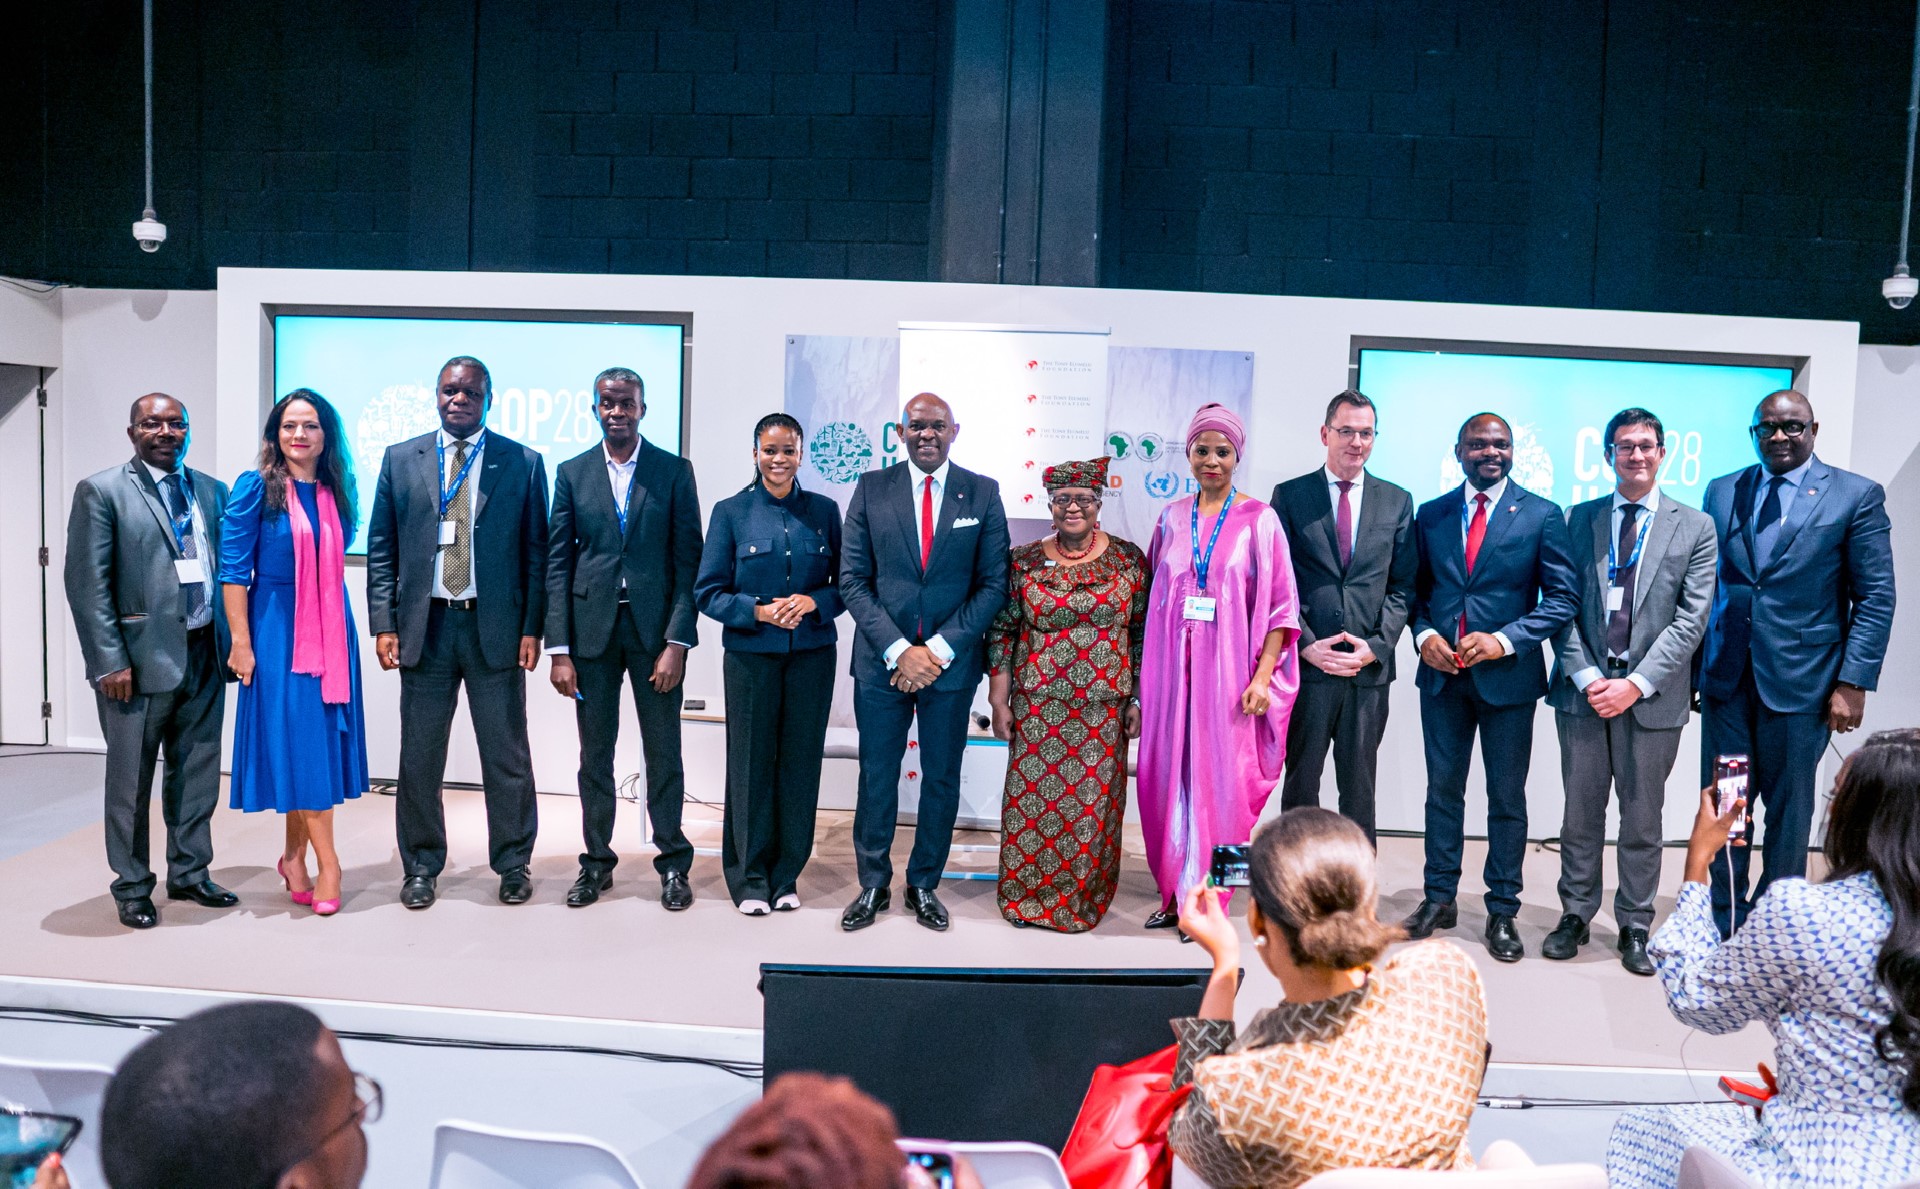 Financement de jeunes entrepreneurs africains dans le secteur vert : La Fondation Tony Elumelu mobilise des dirigeants mondiaux